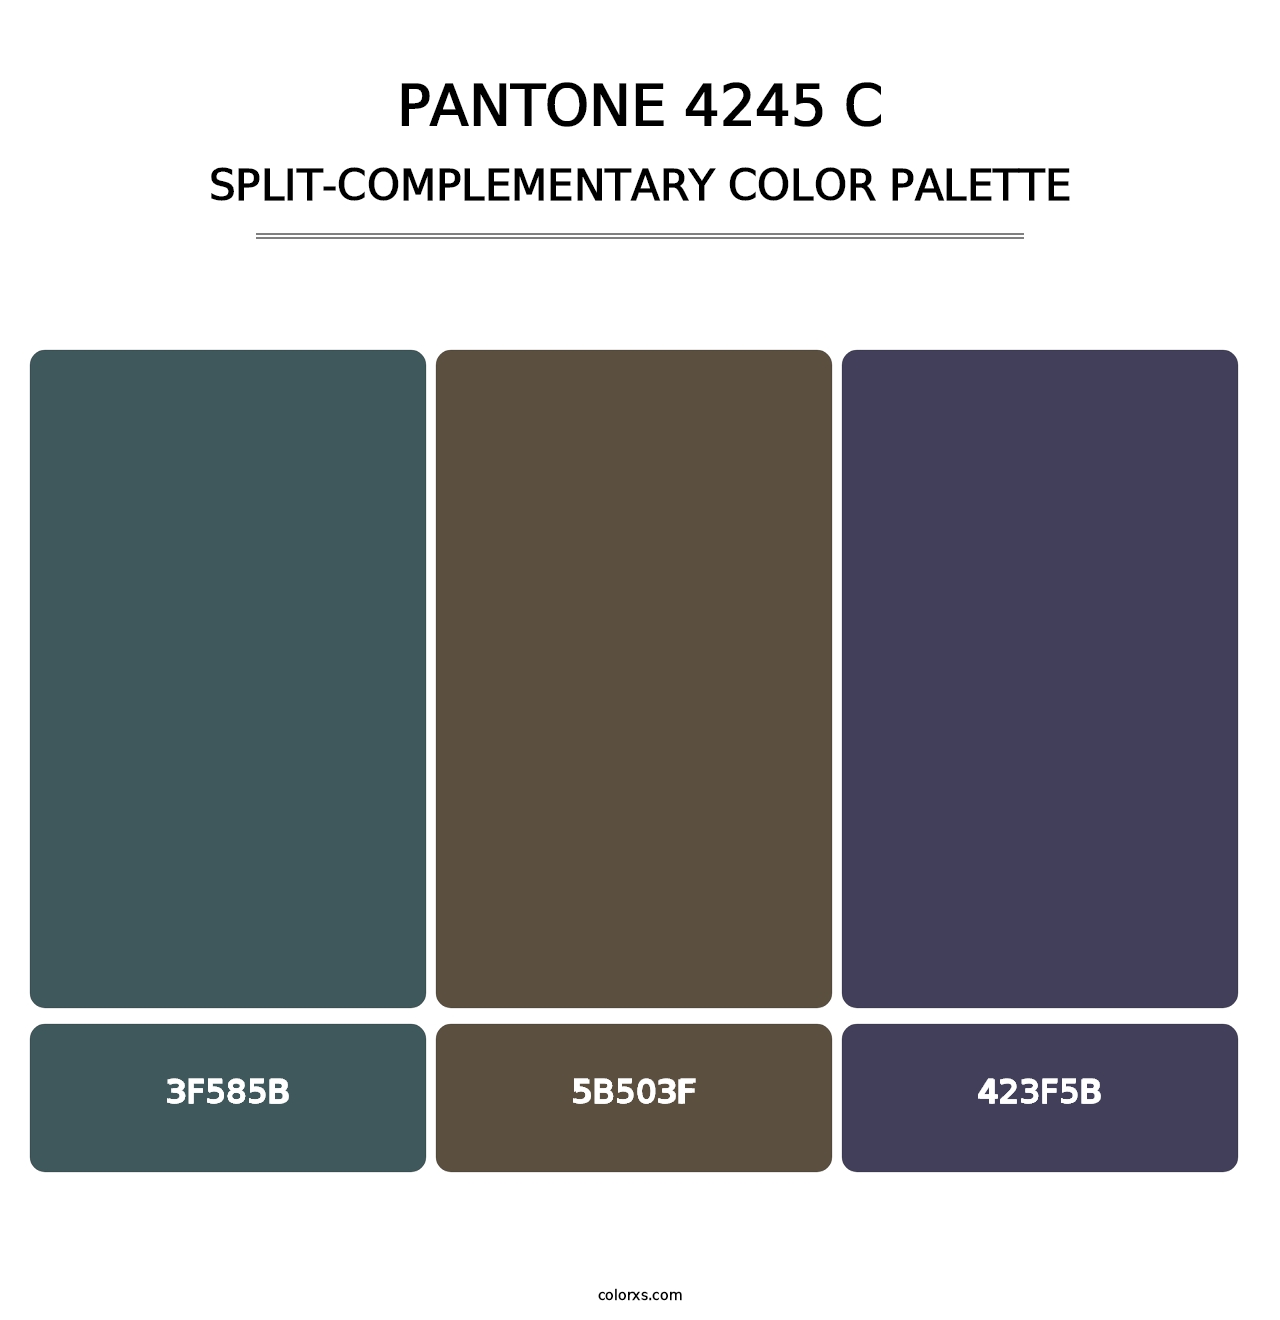 PANTONE 4245 C - Split-Complementary Color Palette